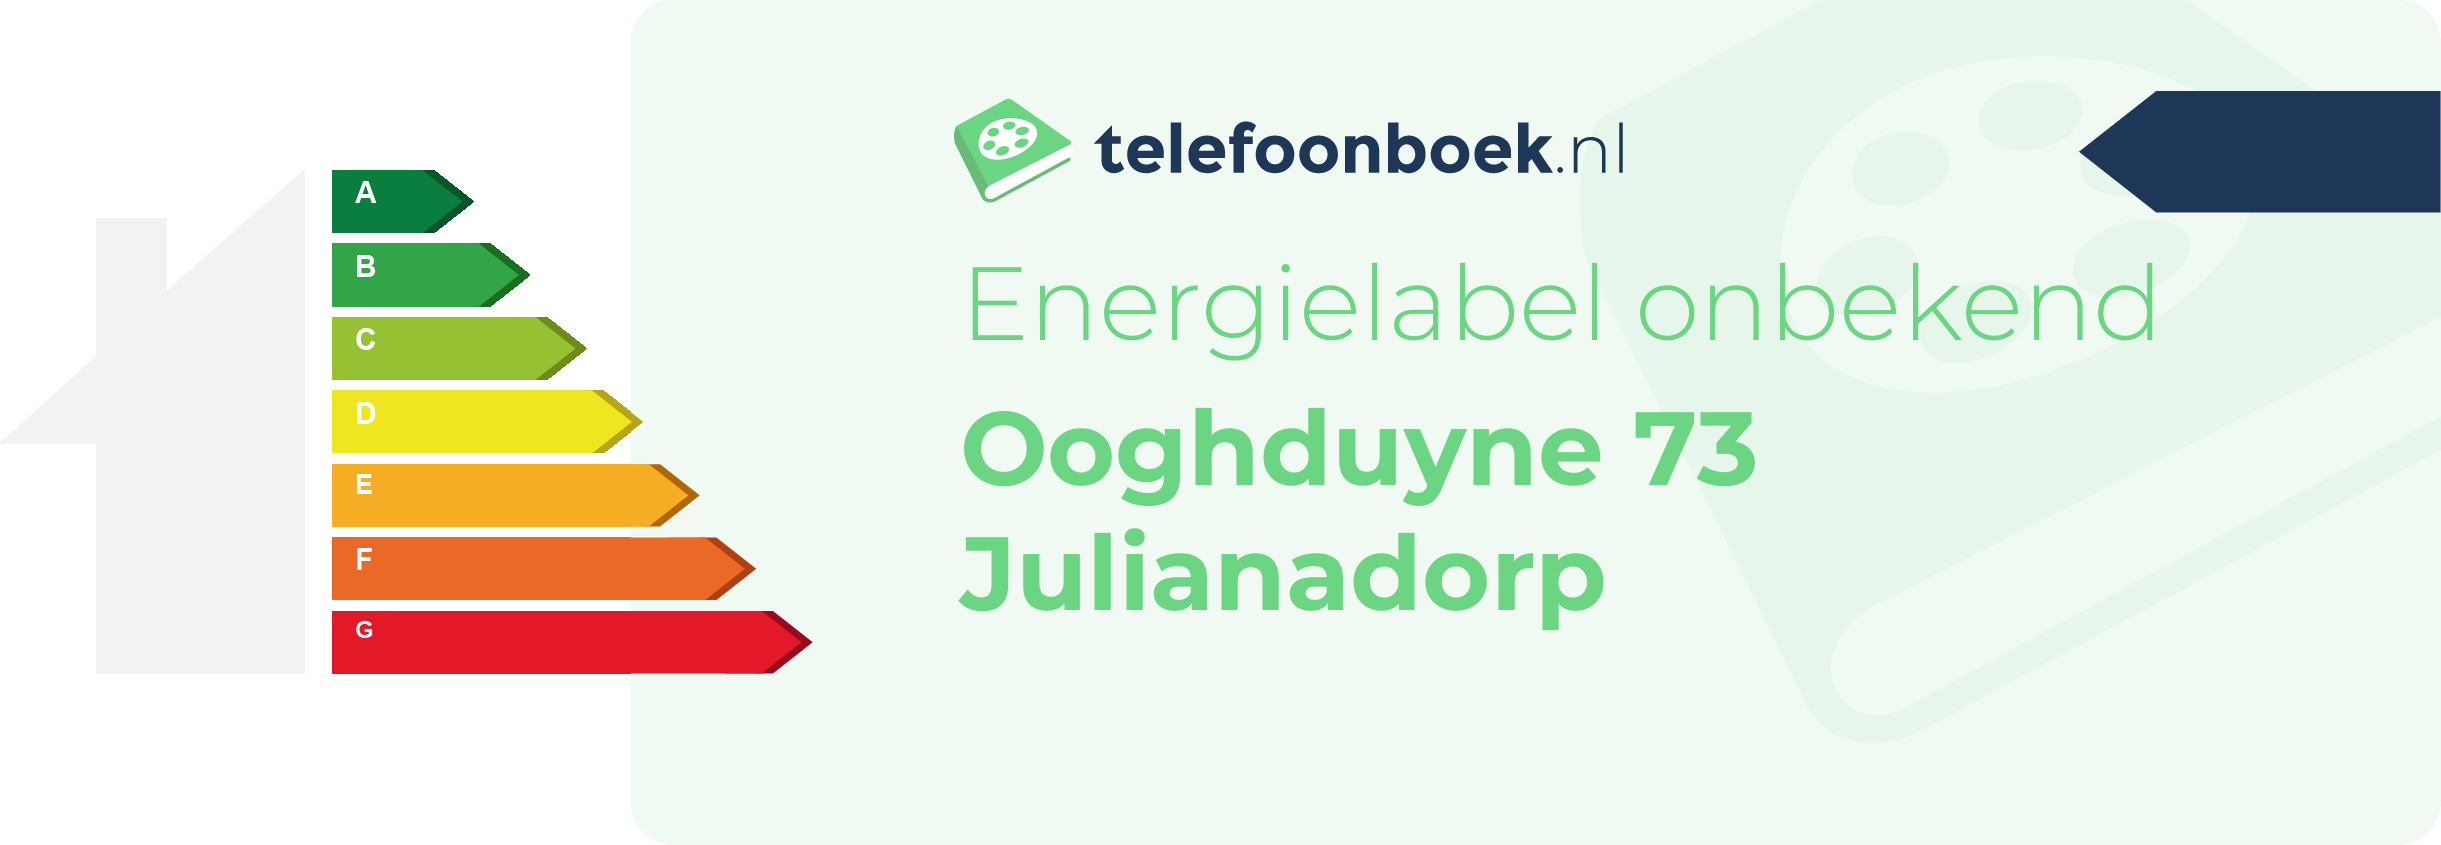 Energielabel Ooghduyne 73 Julianadorp